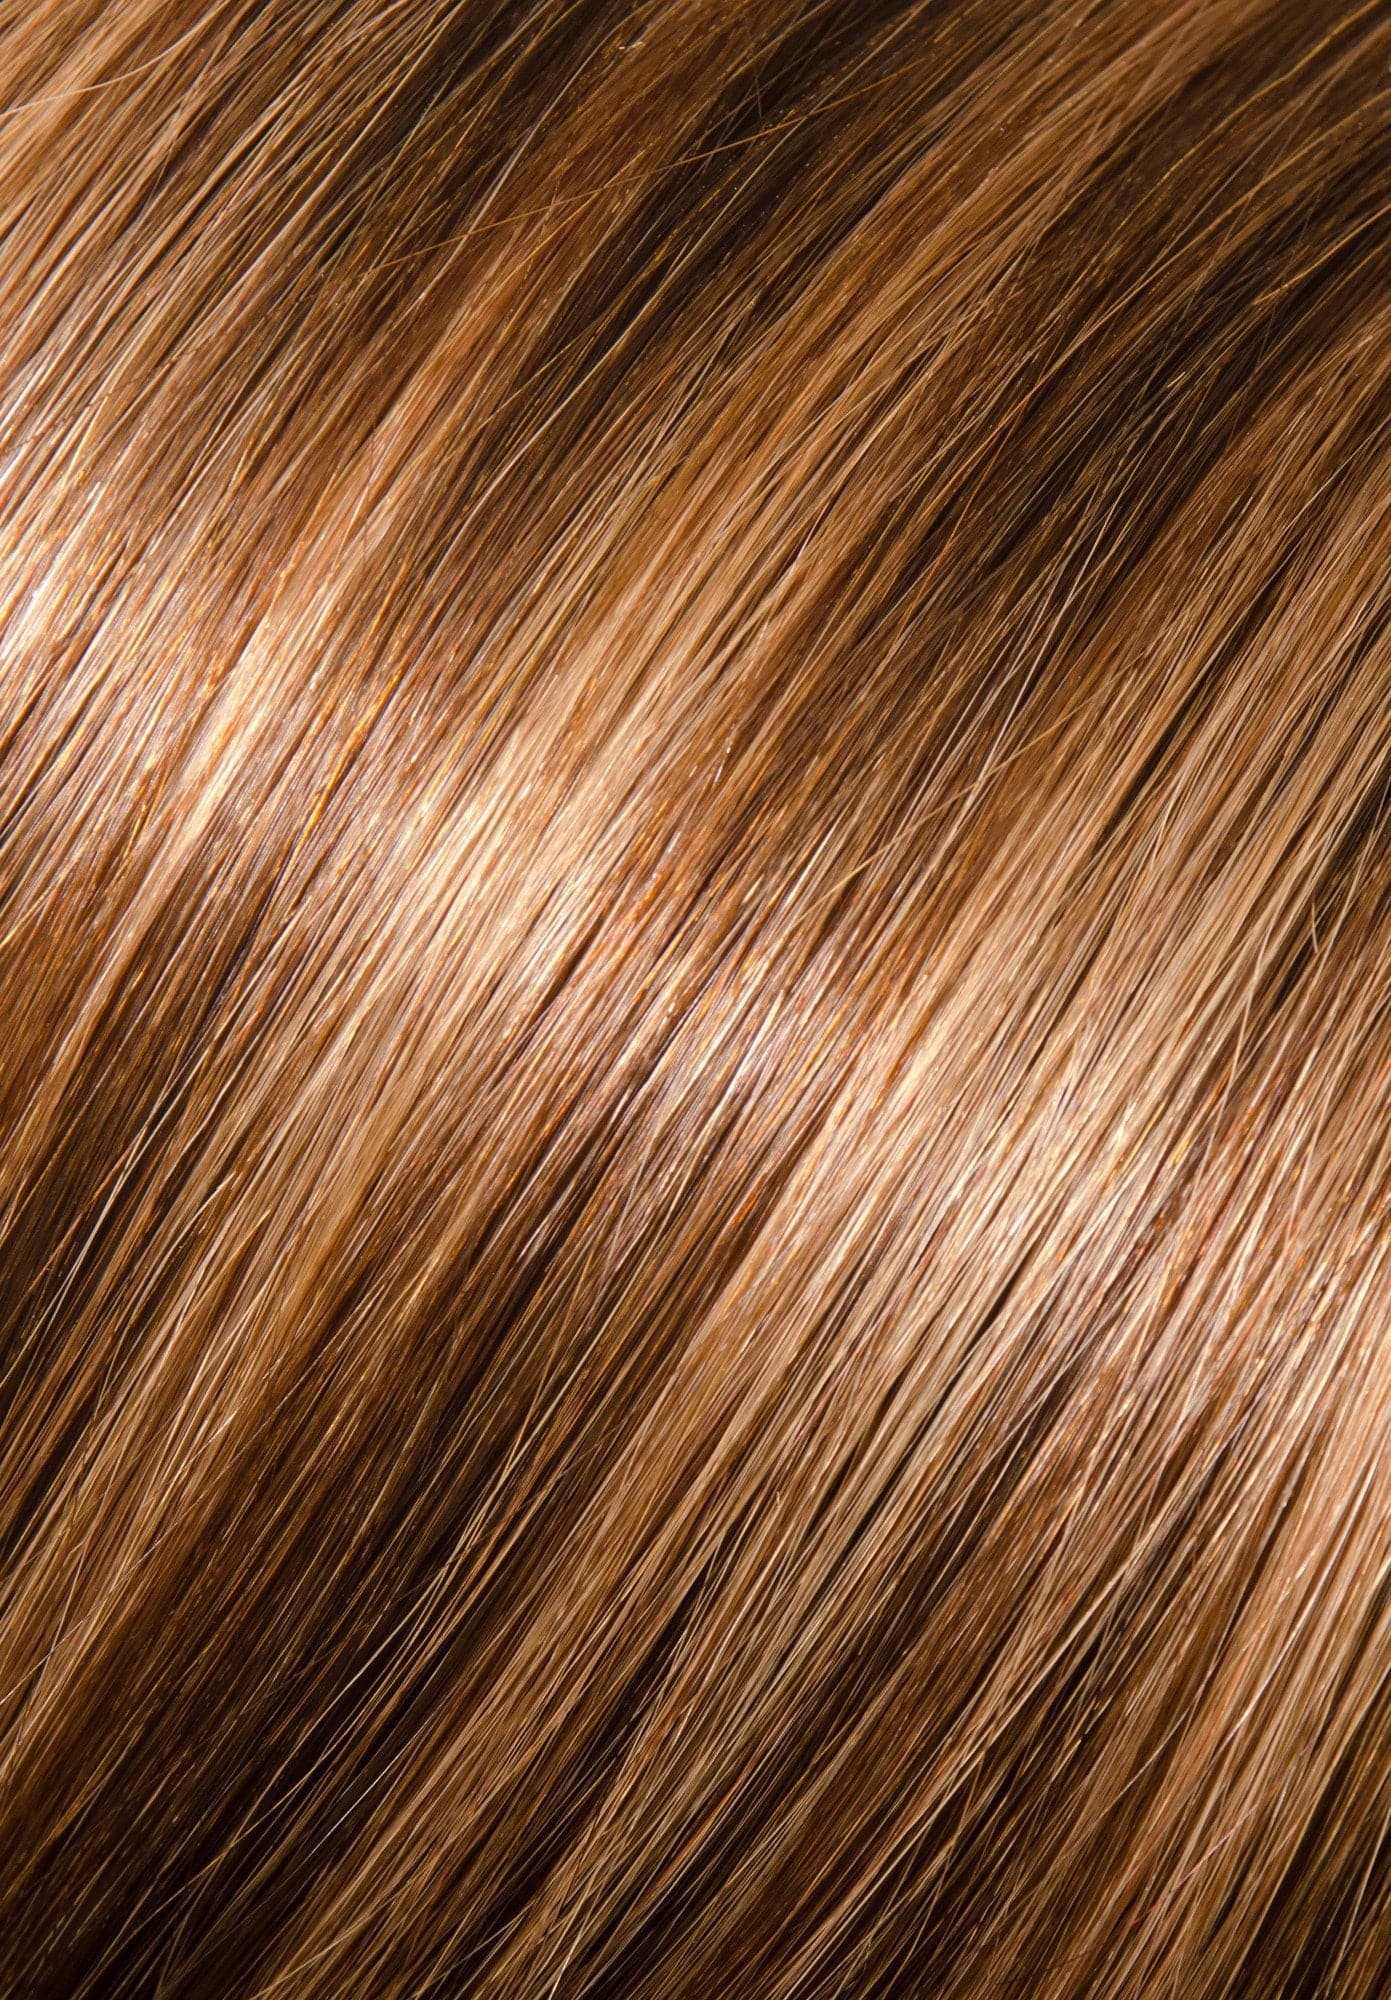 16" Kera-Link Straight #6/10 (Dark Chestnut/Medium Ash) - Donna Bella Hair